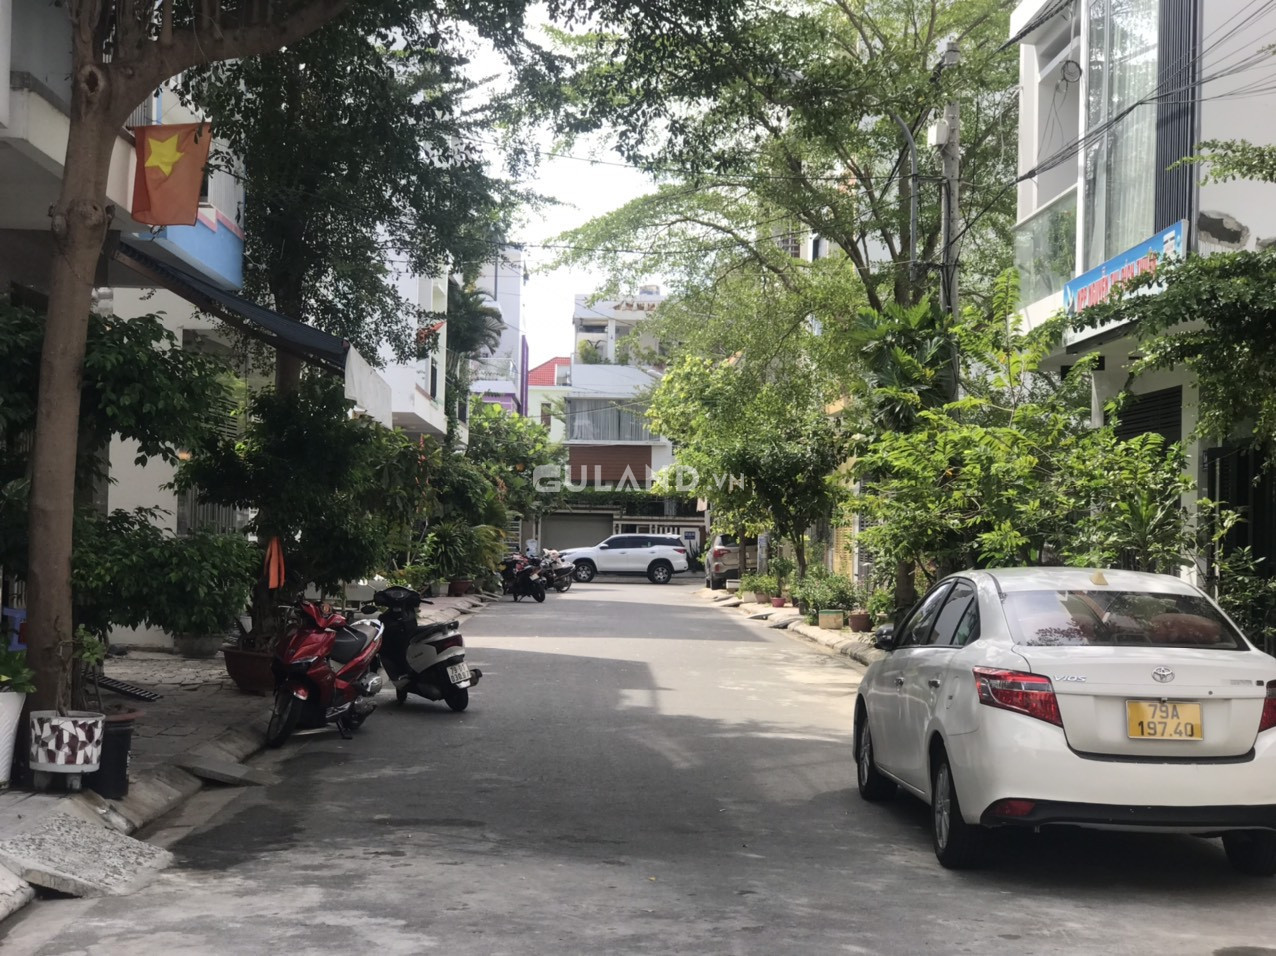 Bán rẻ lô đất tái định cư Phước Long Nha Trang. khu dân cư. nhiều tiện ích. giá rẻ nhất khu vực. 0975554357